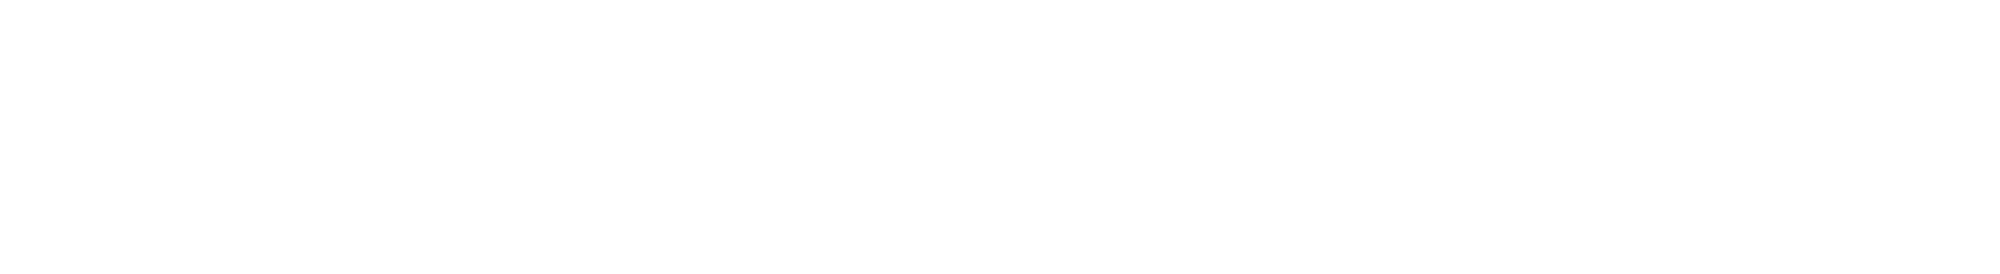 Nextdoor Logo - File:Nextdoor logo white.svg - Wikimedia Commons